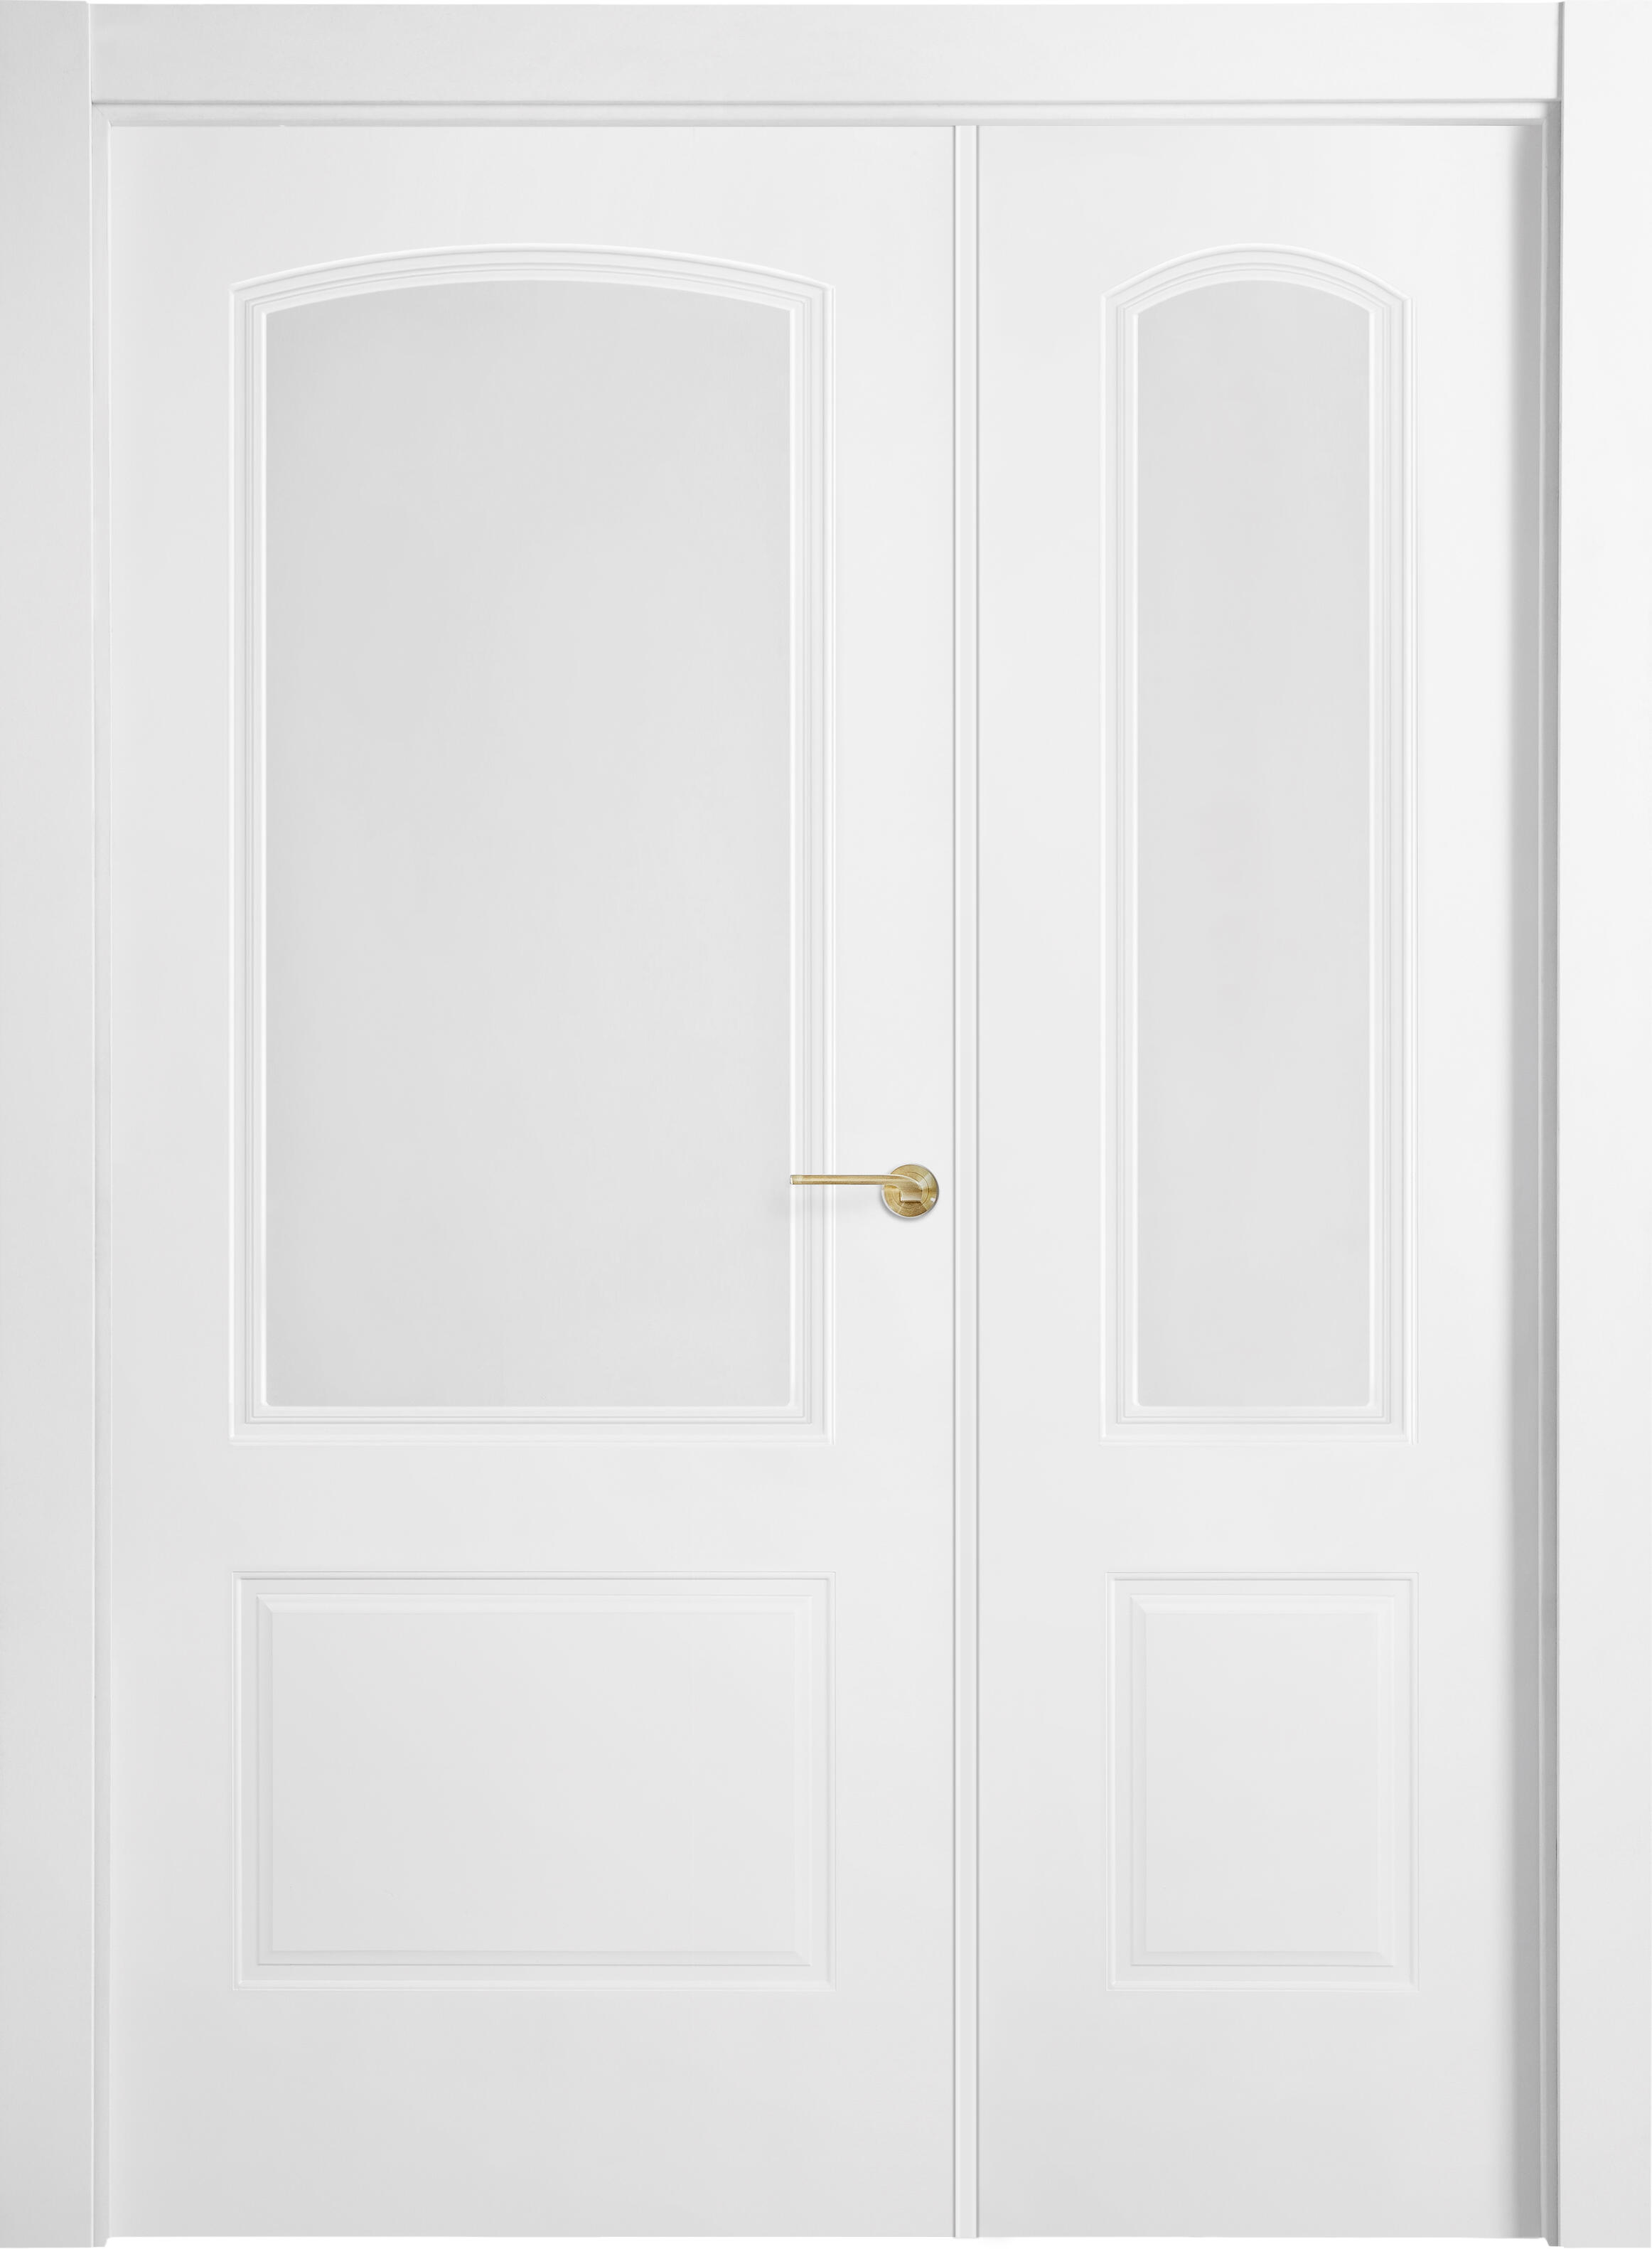 Puerta berlin plus blanco apertura izquierda con cristal 105cm